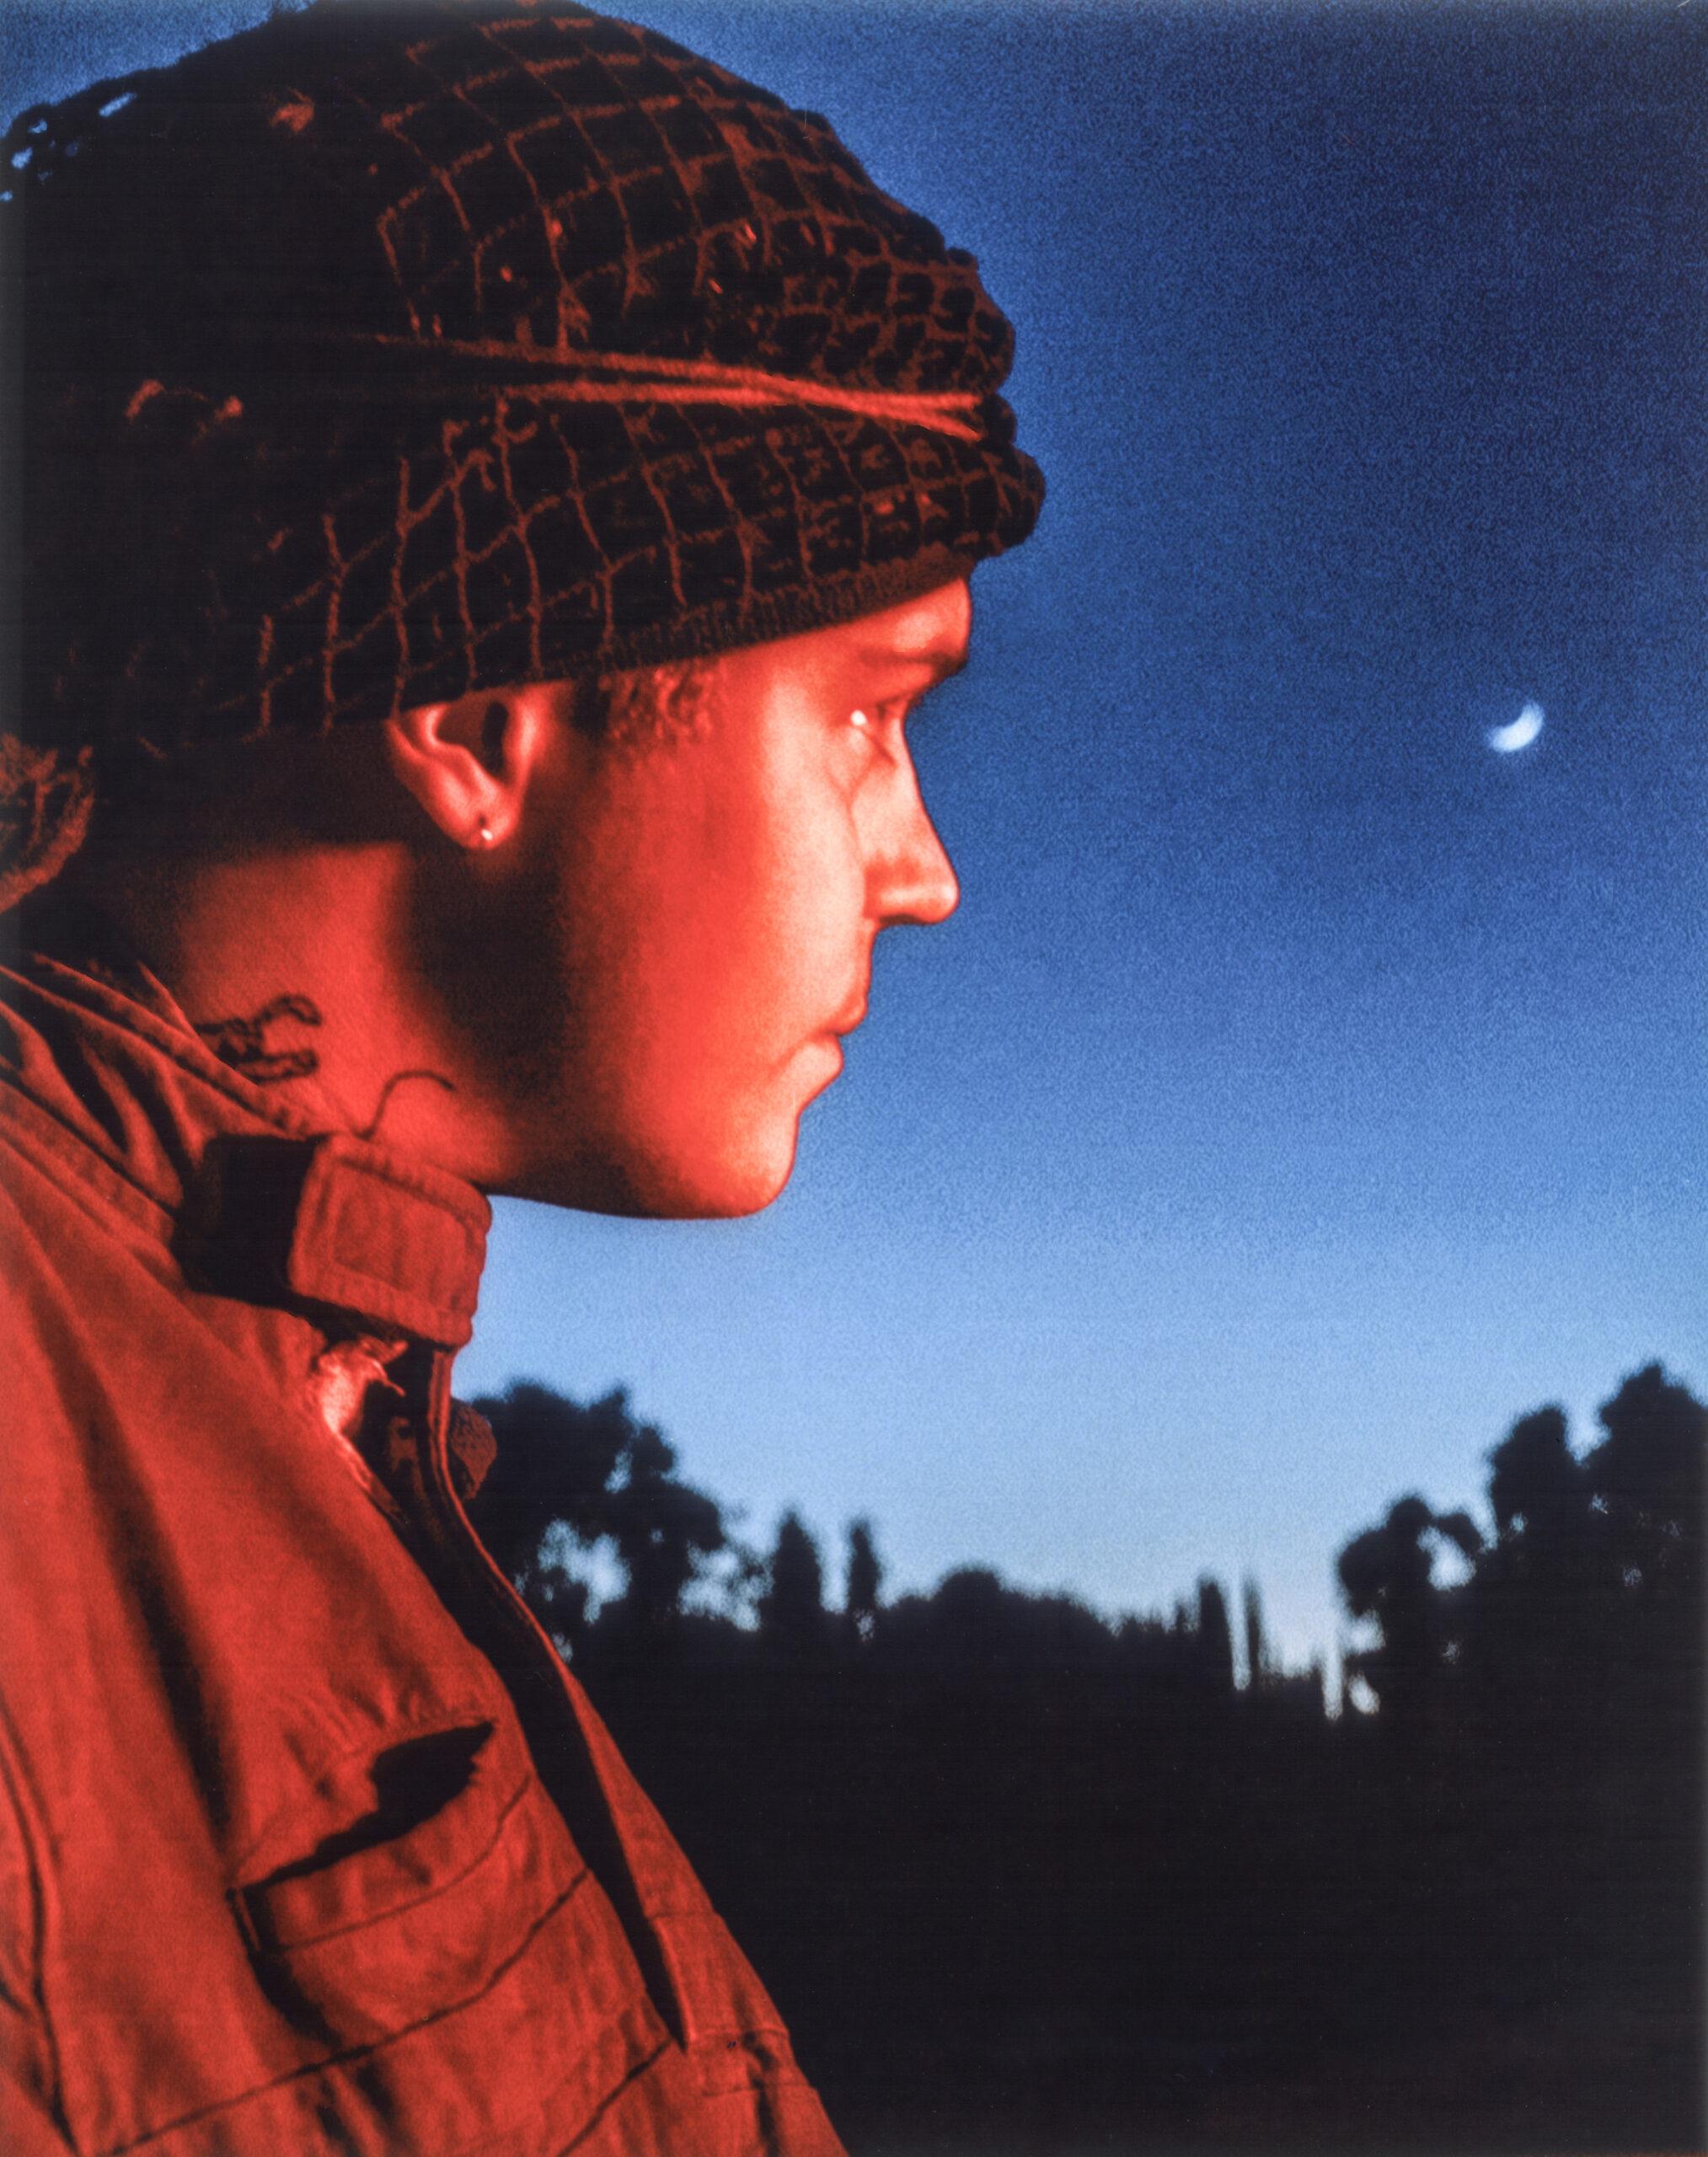 Sideways portrait of Yung Lean against a dark blue night sky.